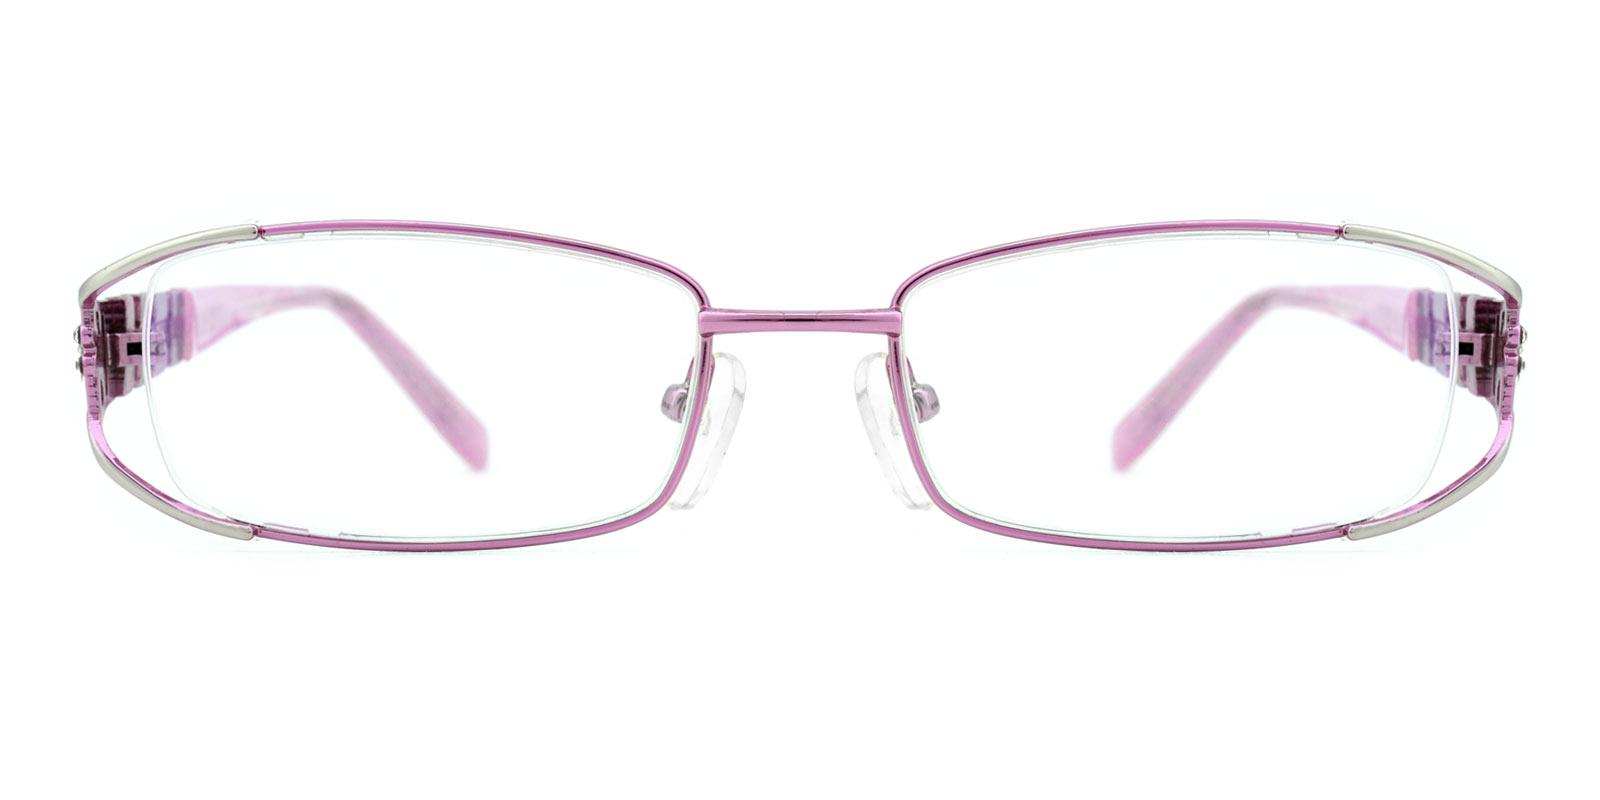 Kaki-Pink-Oval-Metal-Eyeglasses-detail